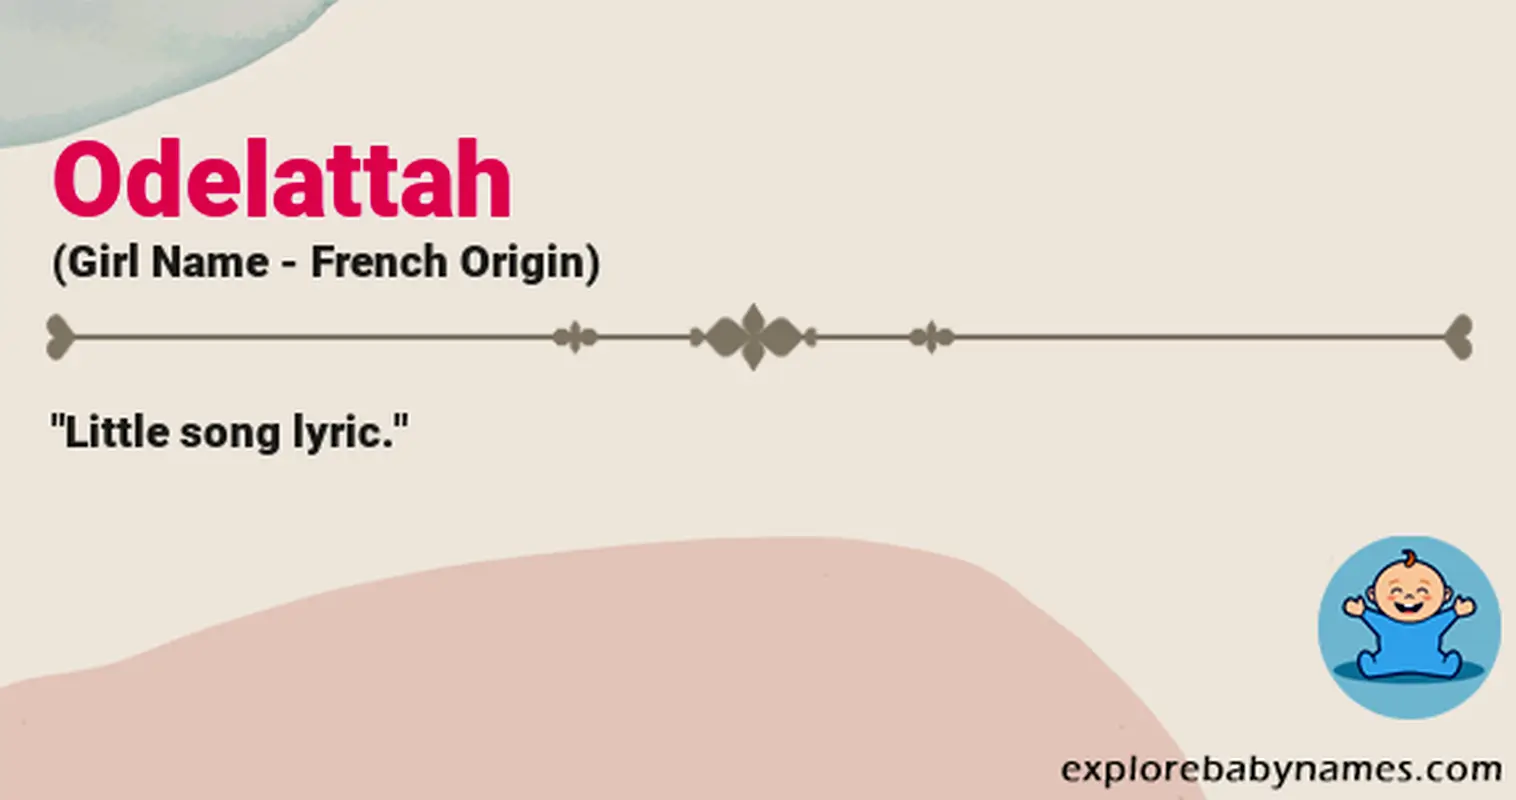 Meaning of Odelattah